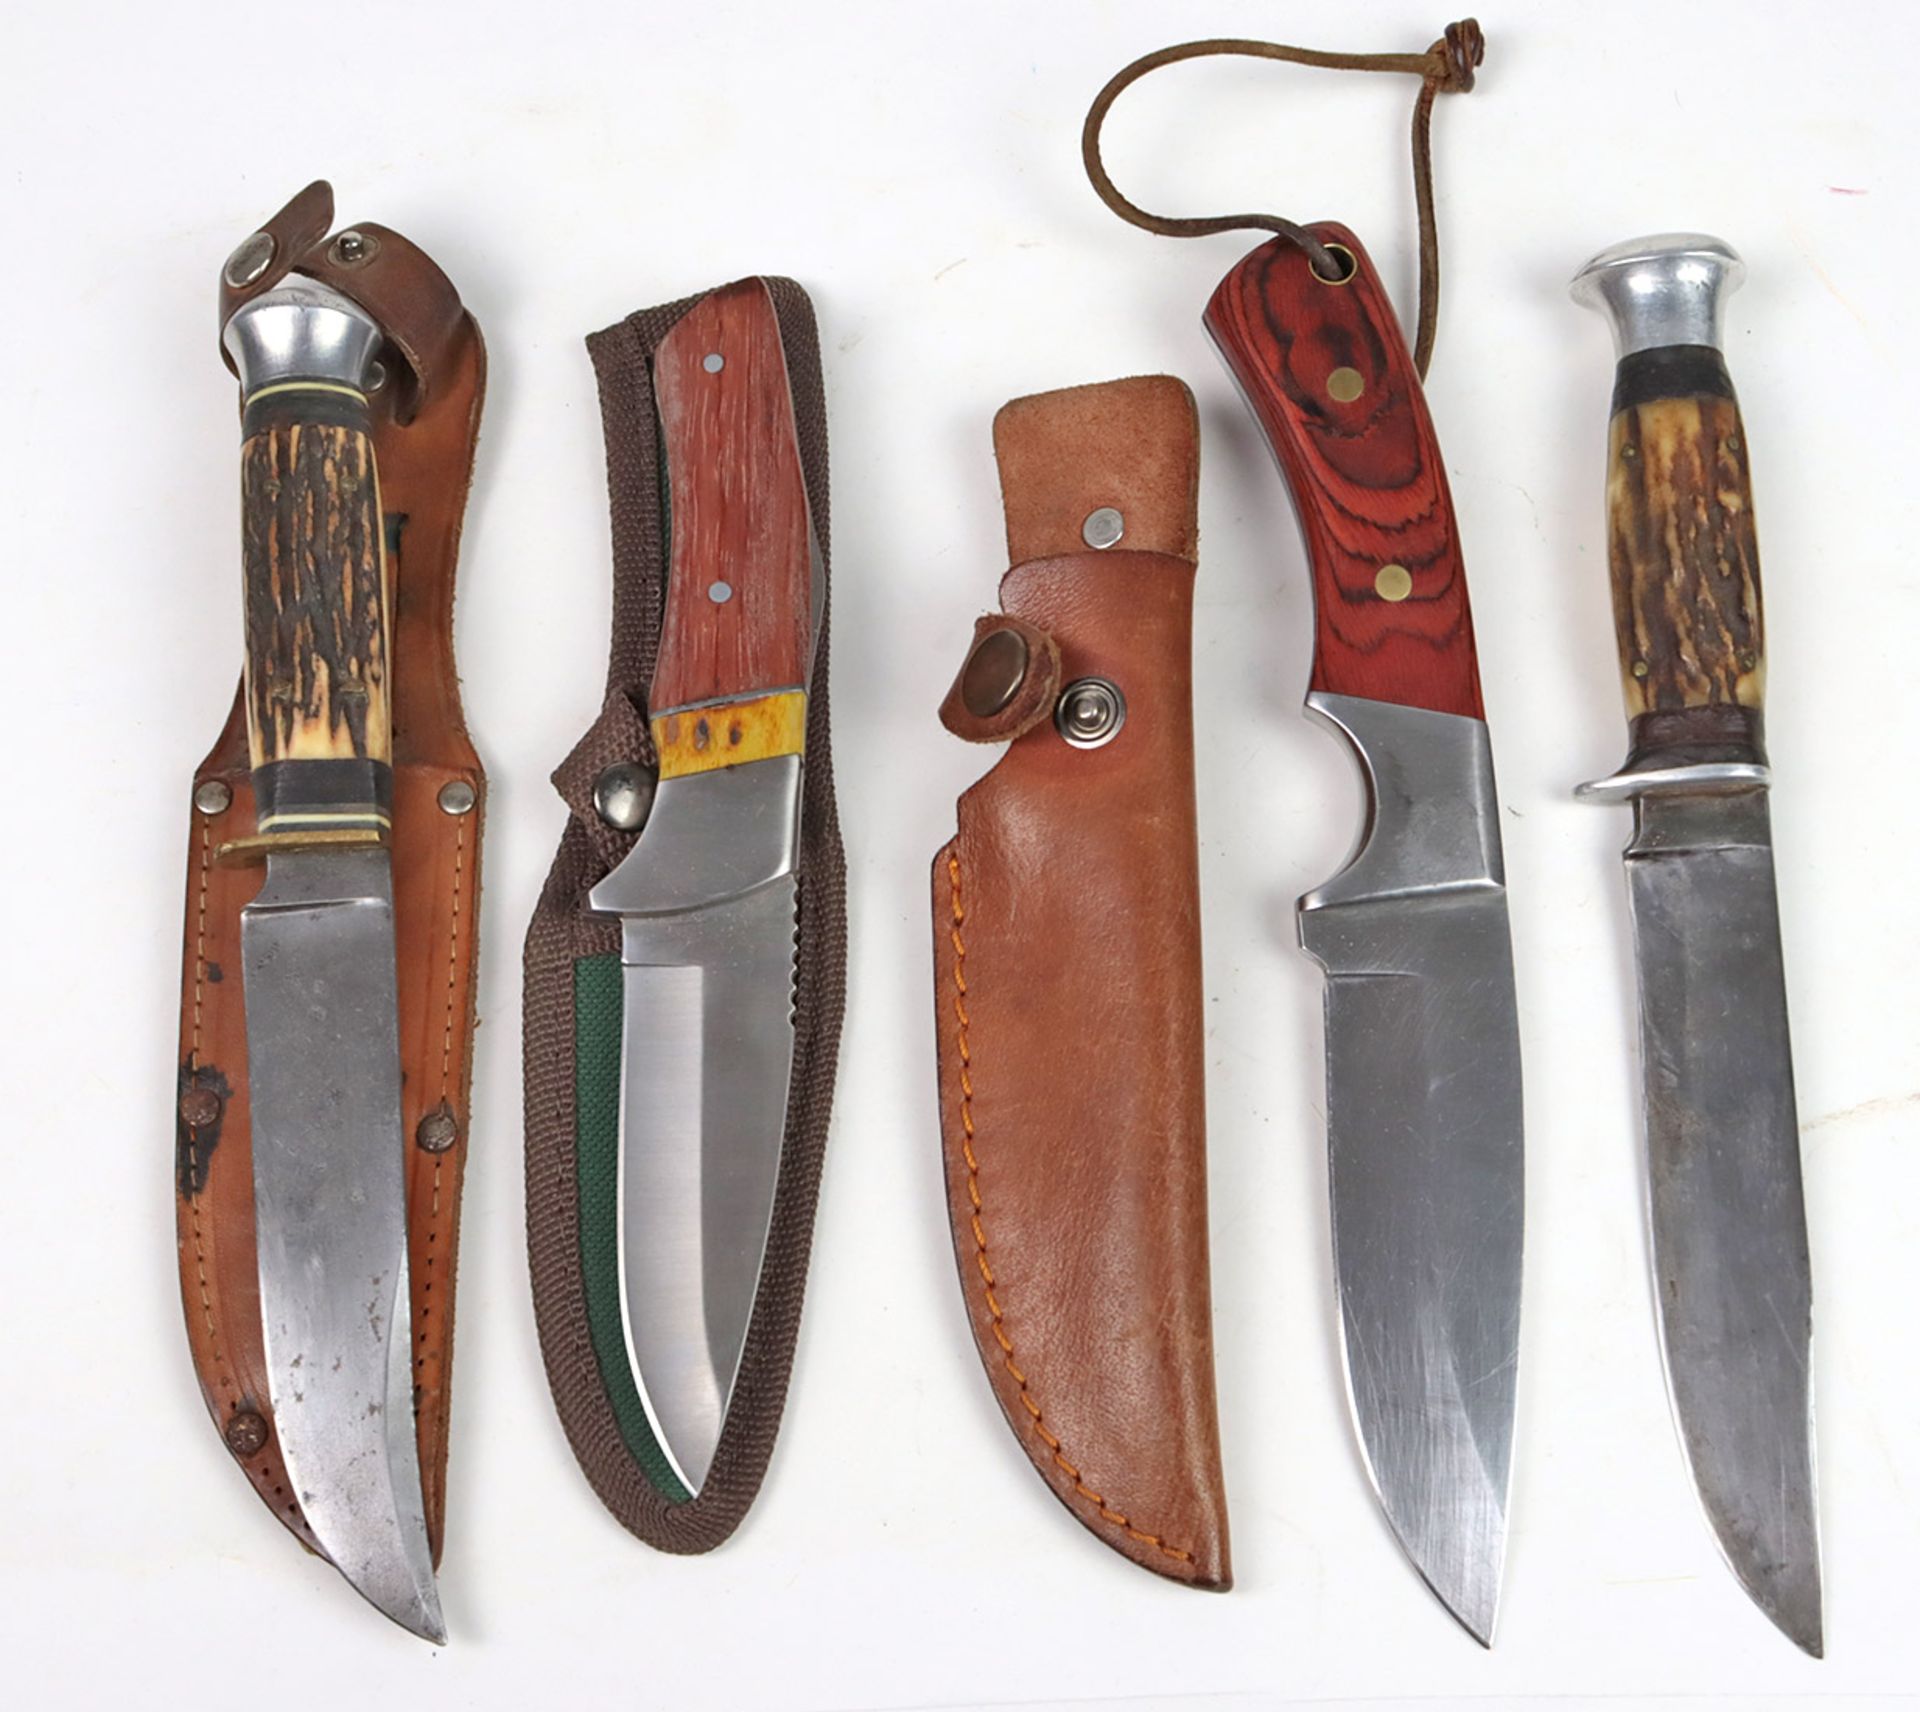 4 Jagdmesser verschieden mit Horn- bzw. Holz-Griff ausgeführt, L ca. 21 bis 24,5 cm,